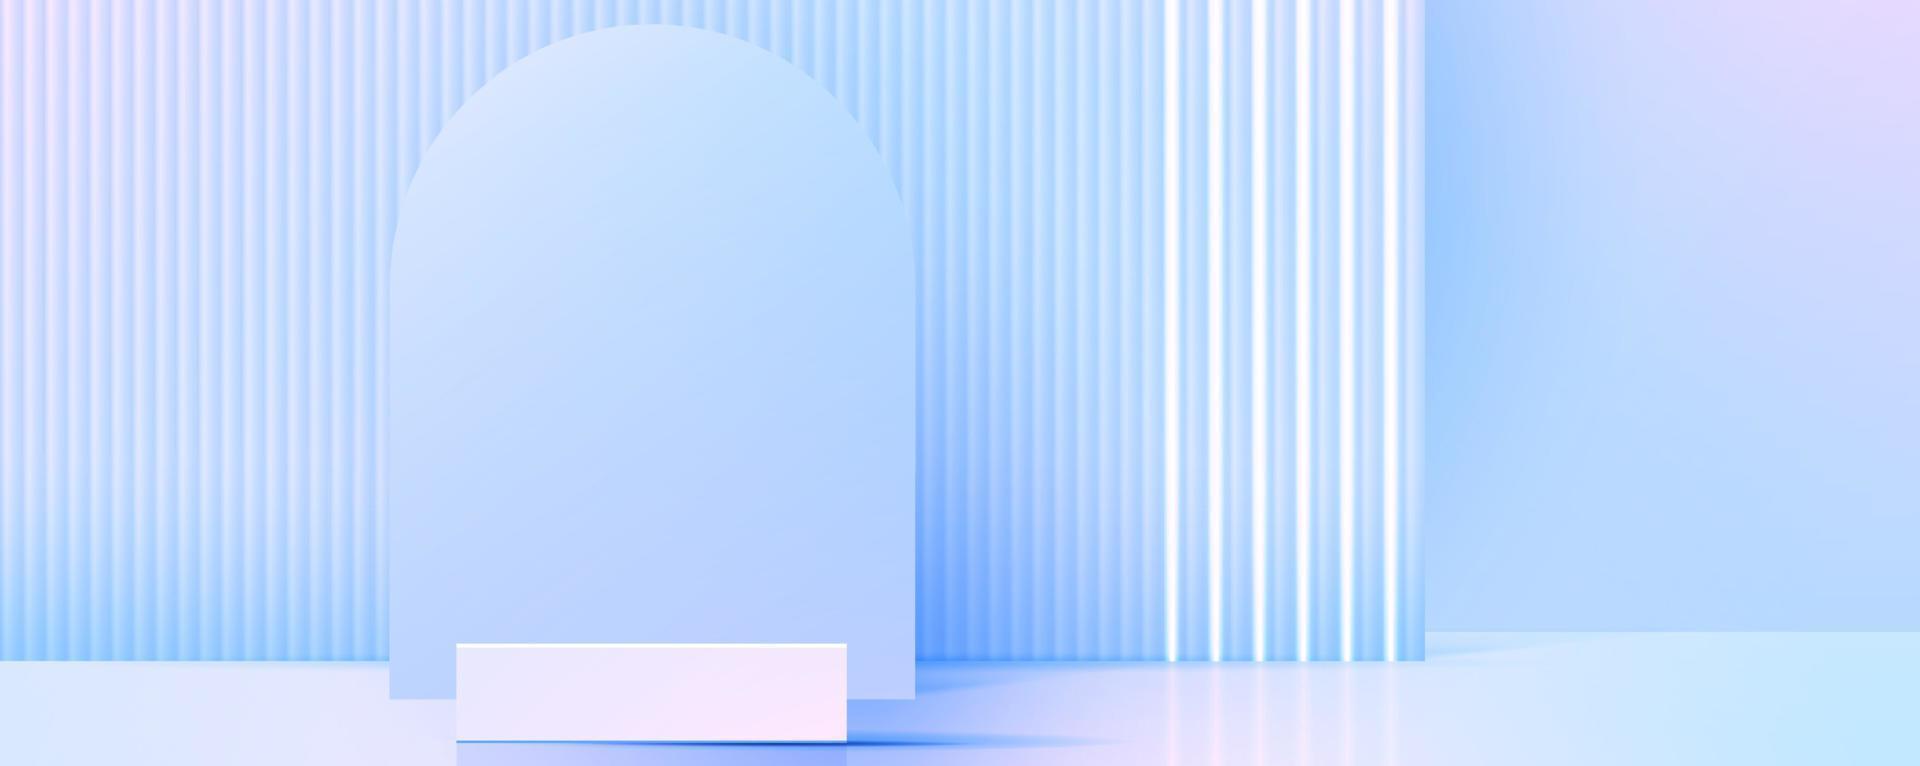 visa podium eller stå med blå och rosa lutning för produkt presentation i pastell färger rum. minimal stil idealisk för presentation produkt plattform, annons, paket som visar. vektor. vektor